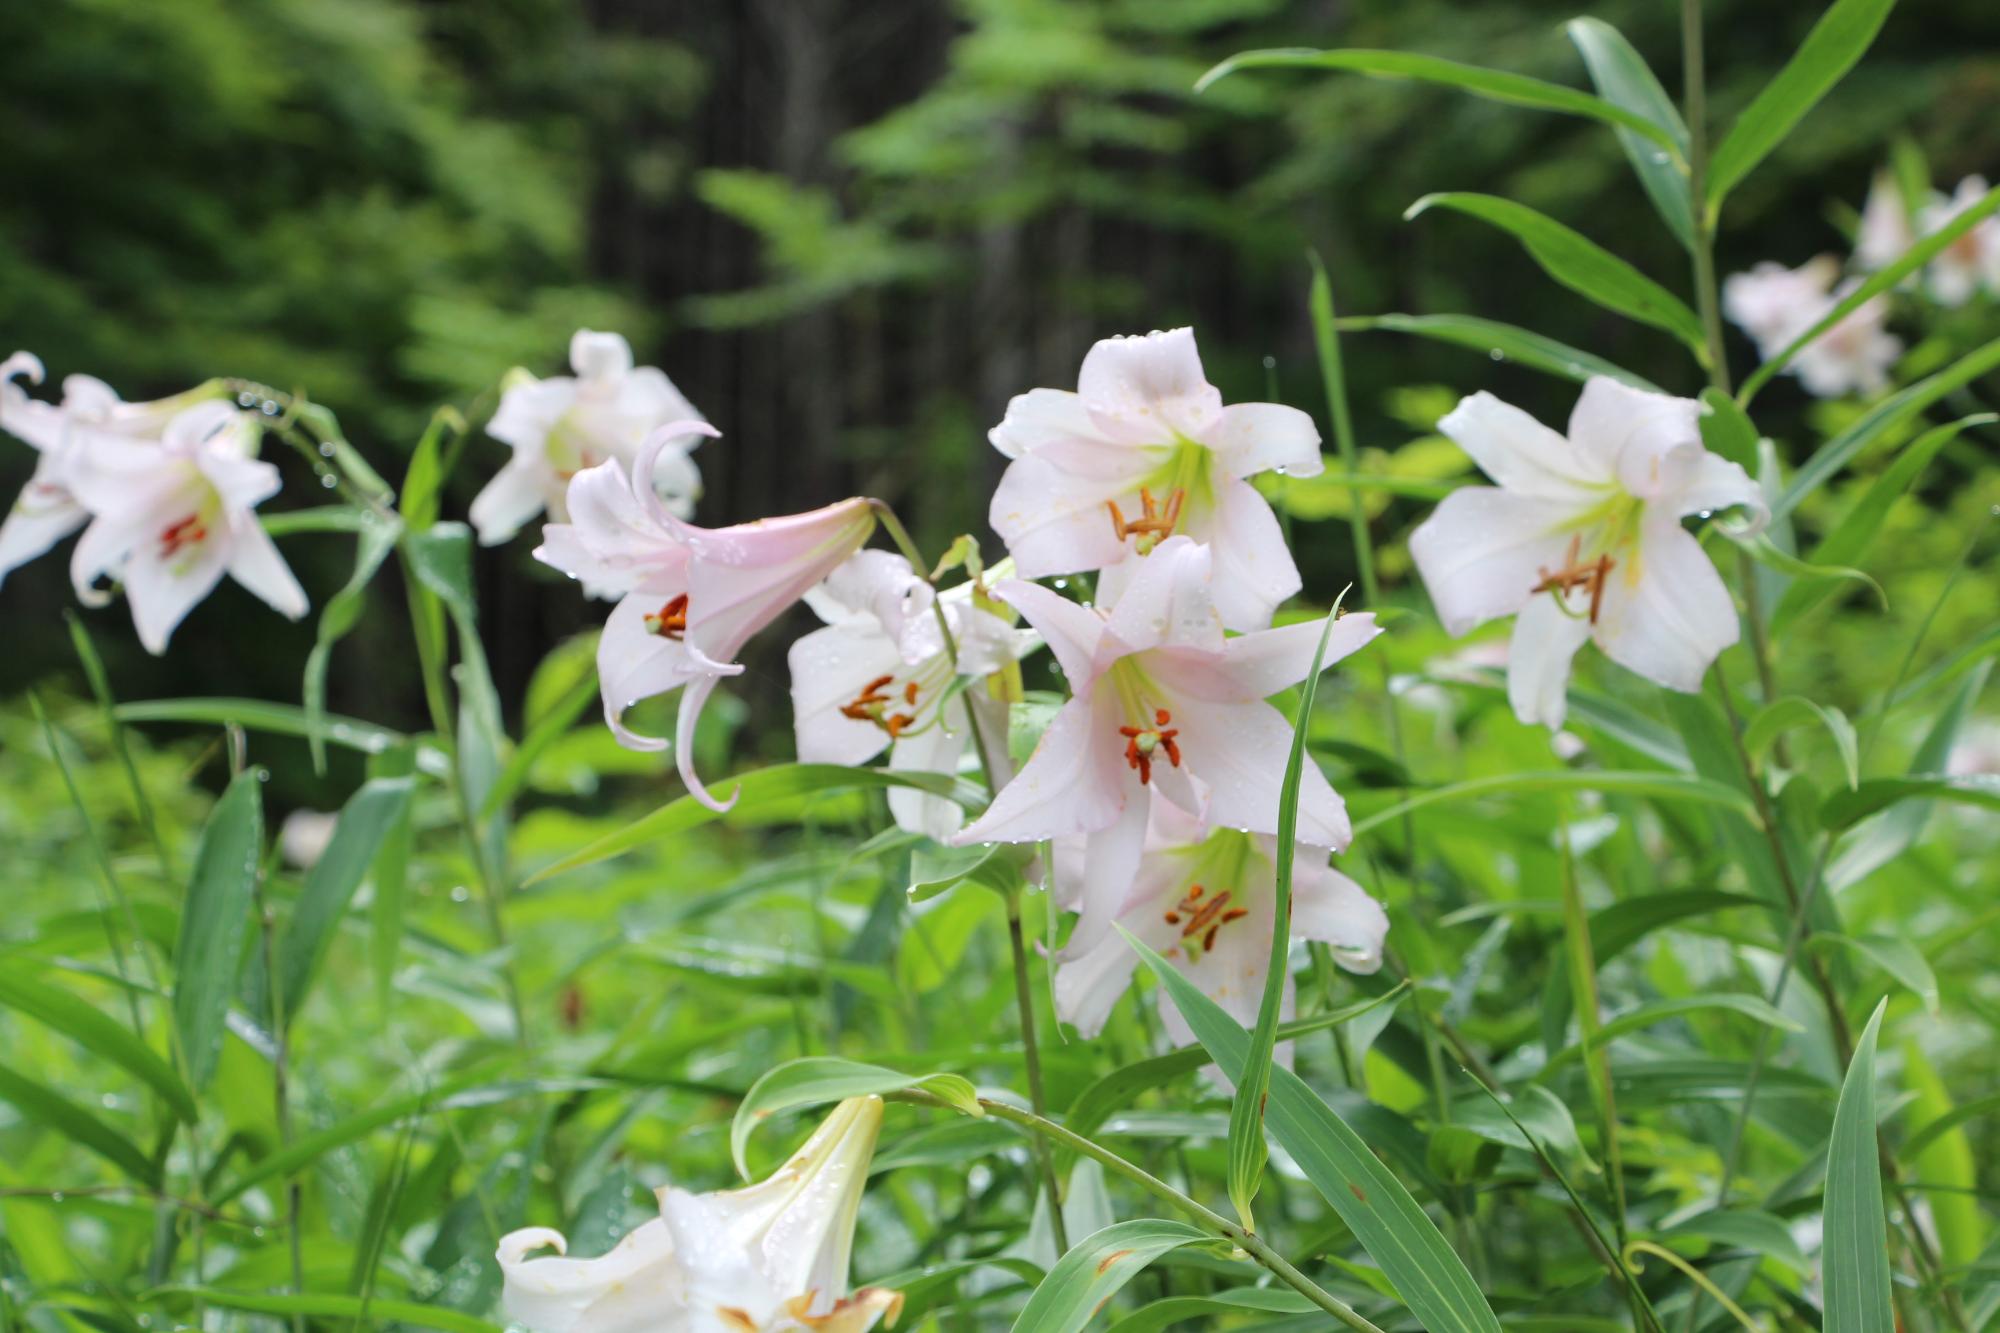 山すそのササユリ群生地で淡いピンクや白い花が一面に咲いている写真